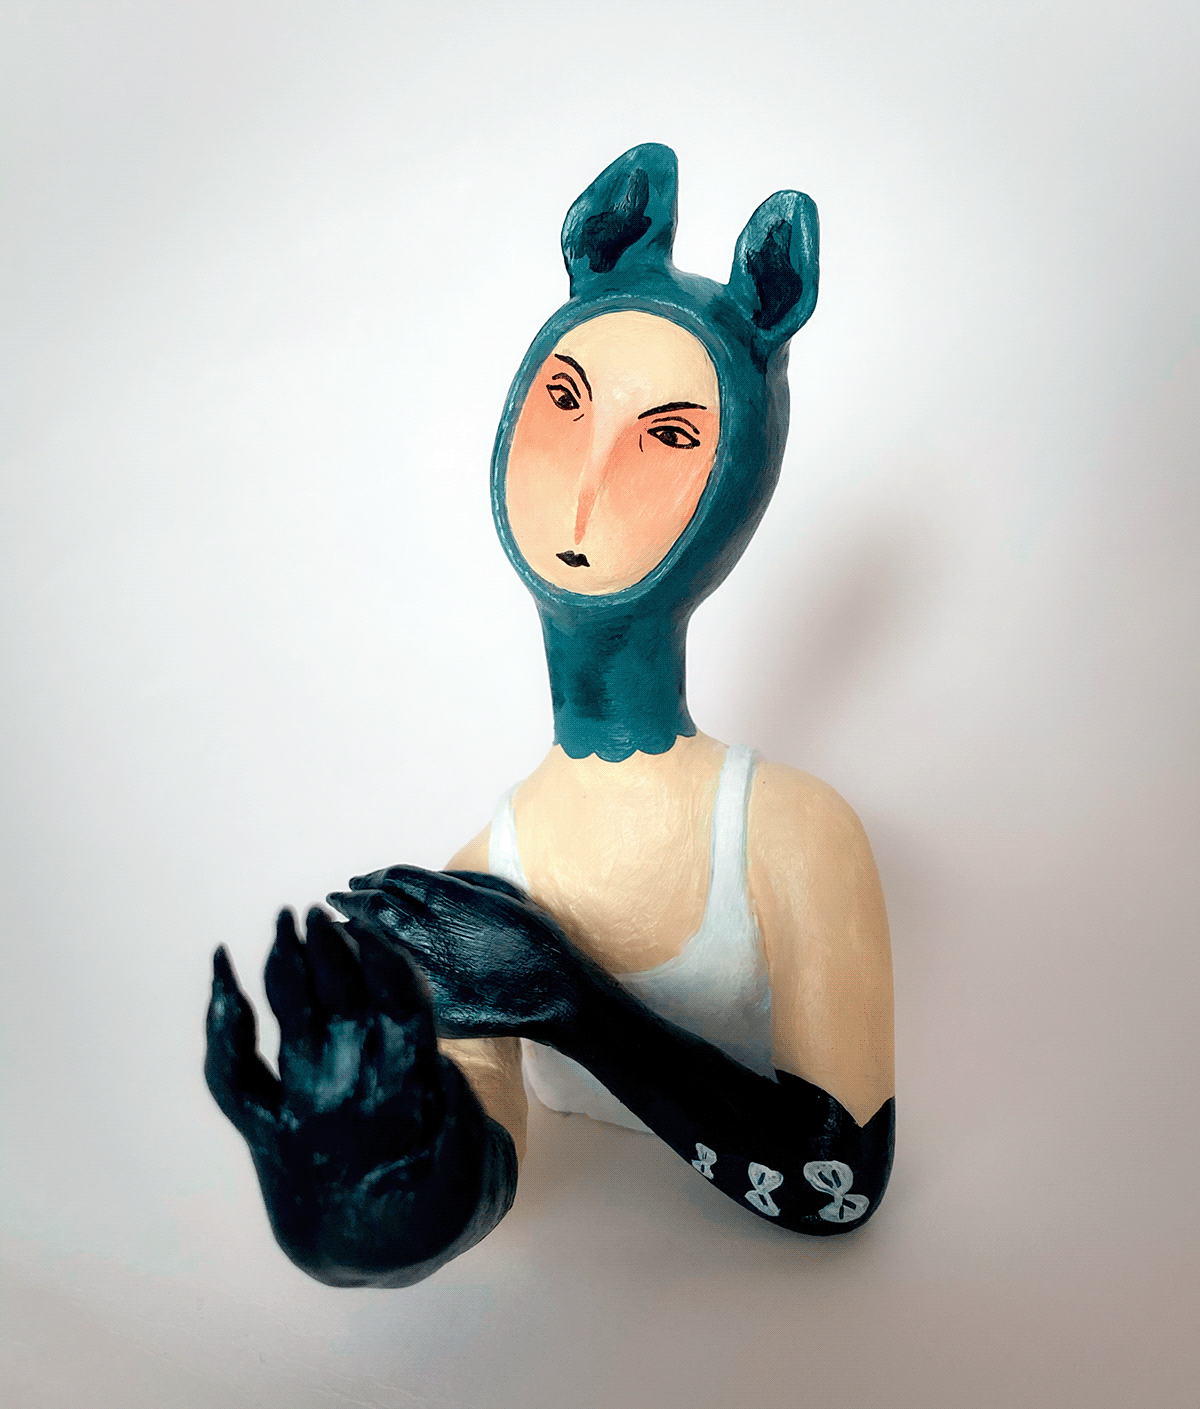 acrylic painting ceramic art ceramic figures ceramic figurines ceramics  clay doll figure figurine sculpting 